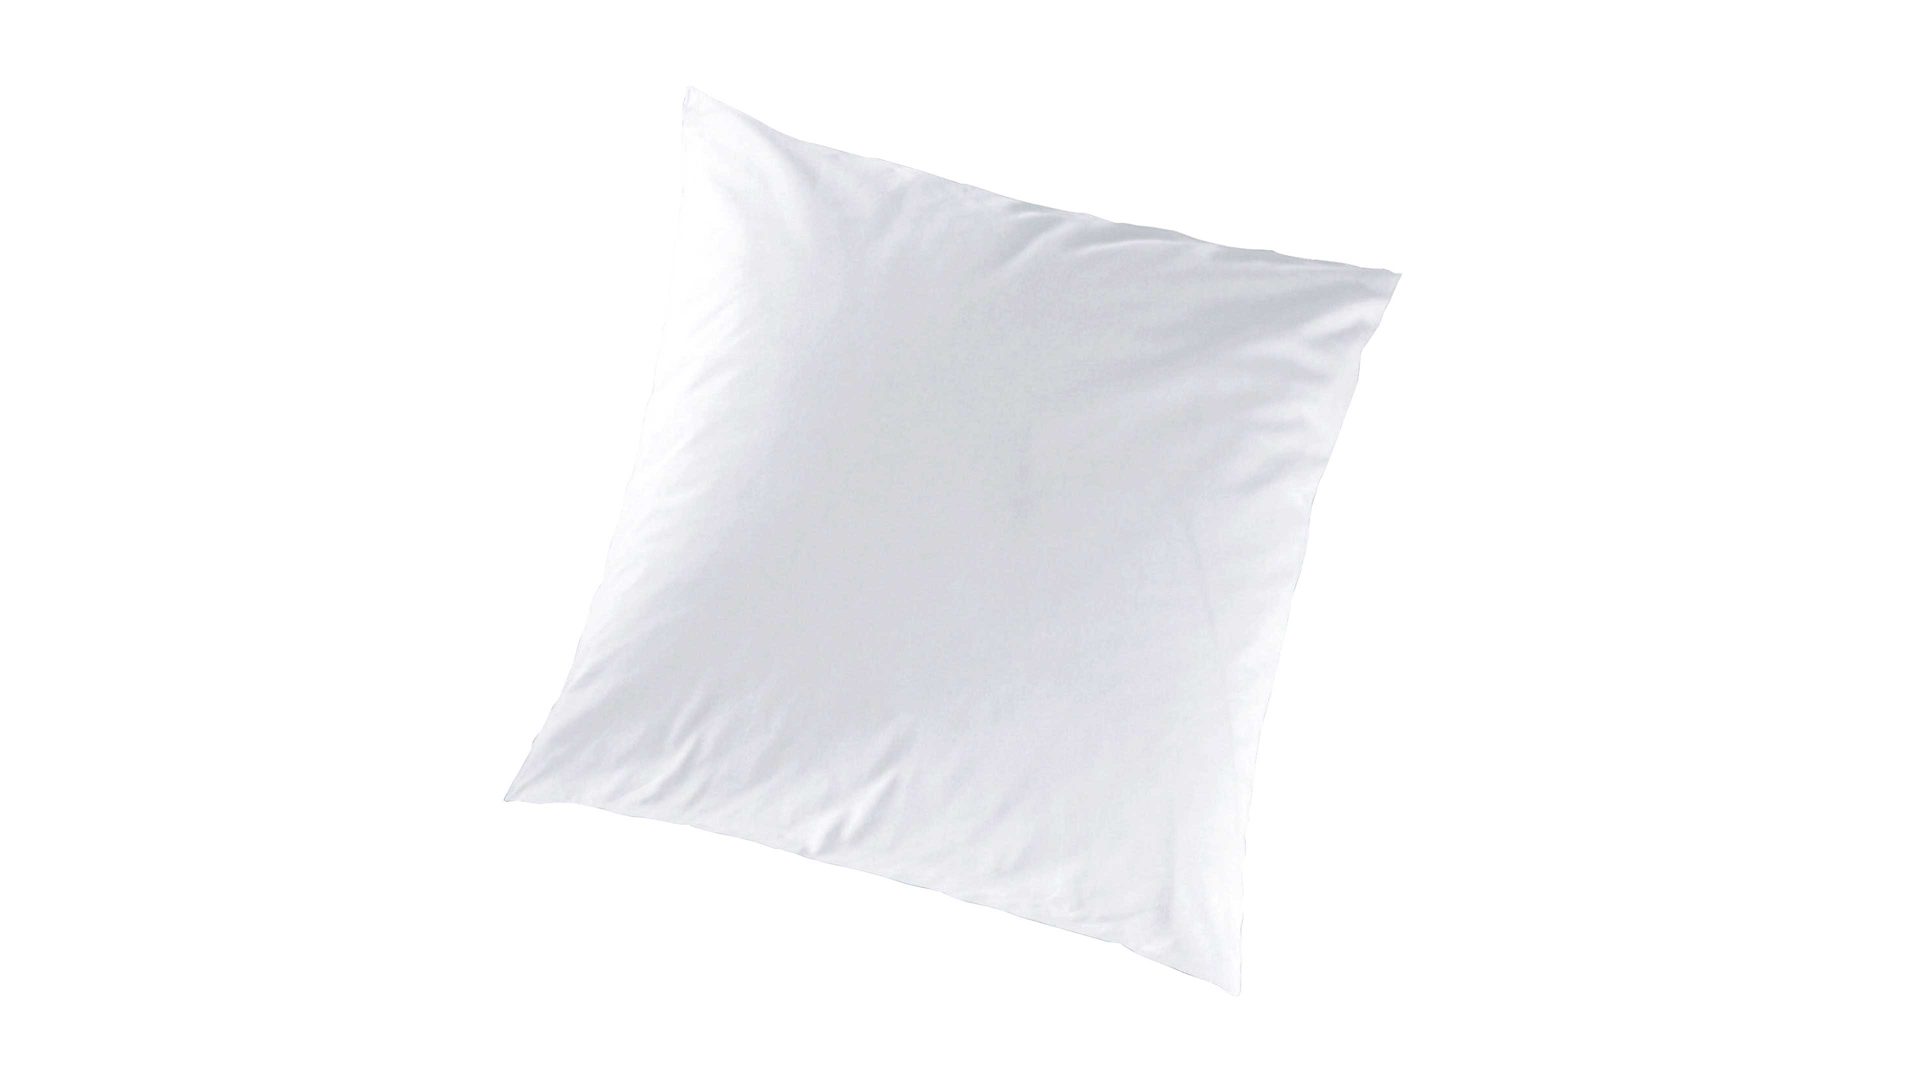 Kissenbezug /-hülle H.g. hahn haustextilien aus Stoff in Weiß HAHN Luxus-Satin-Kopfkissenbezug Sempre weißer Baumwollsatin - ca. 40 x 40 cm